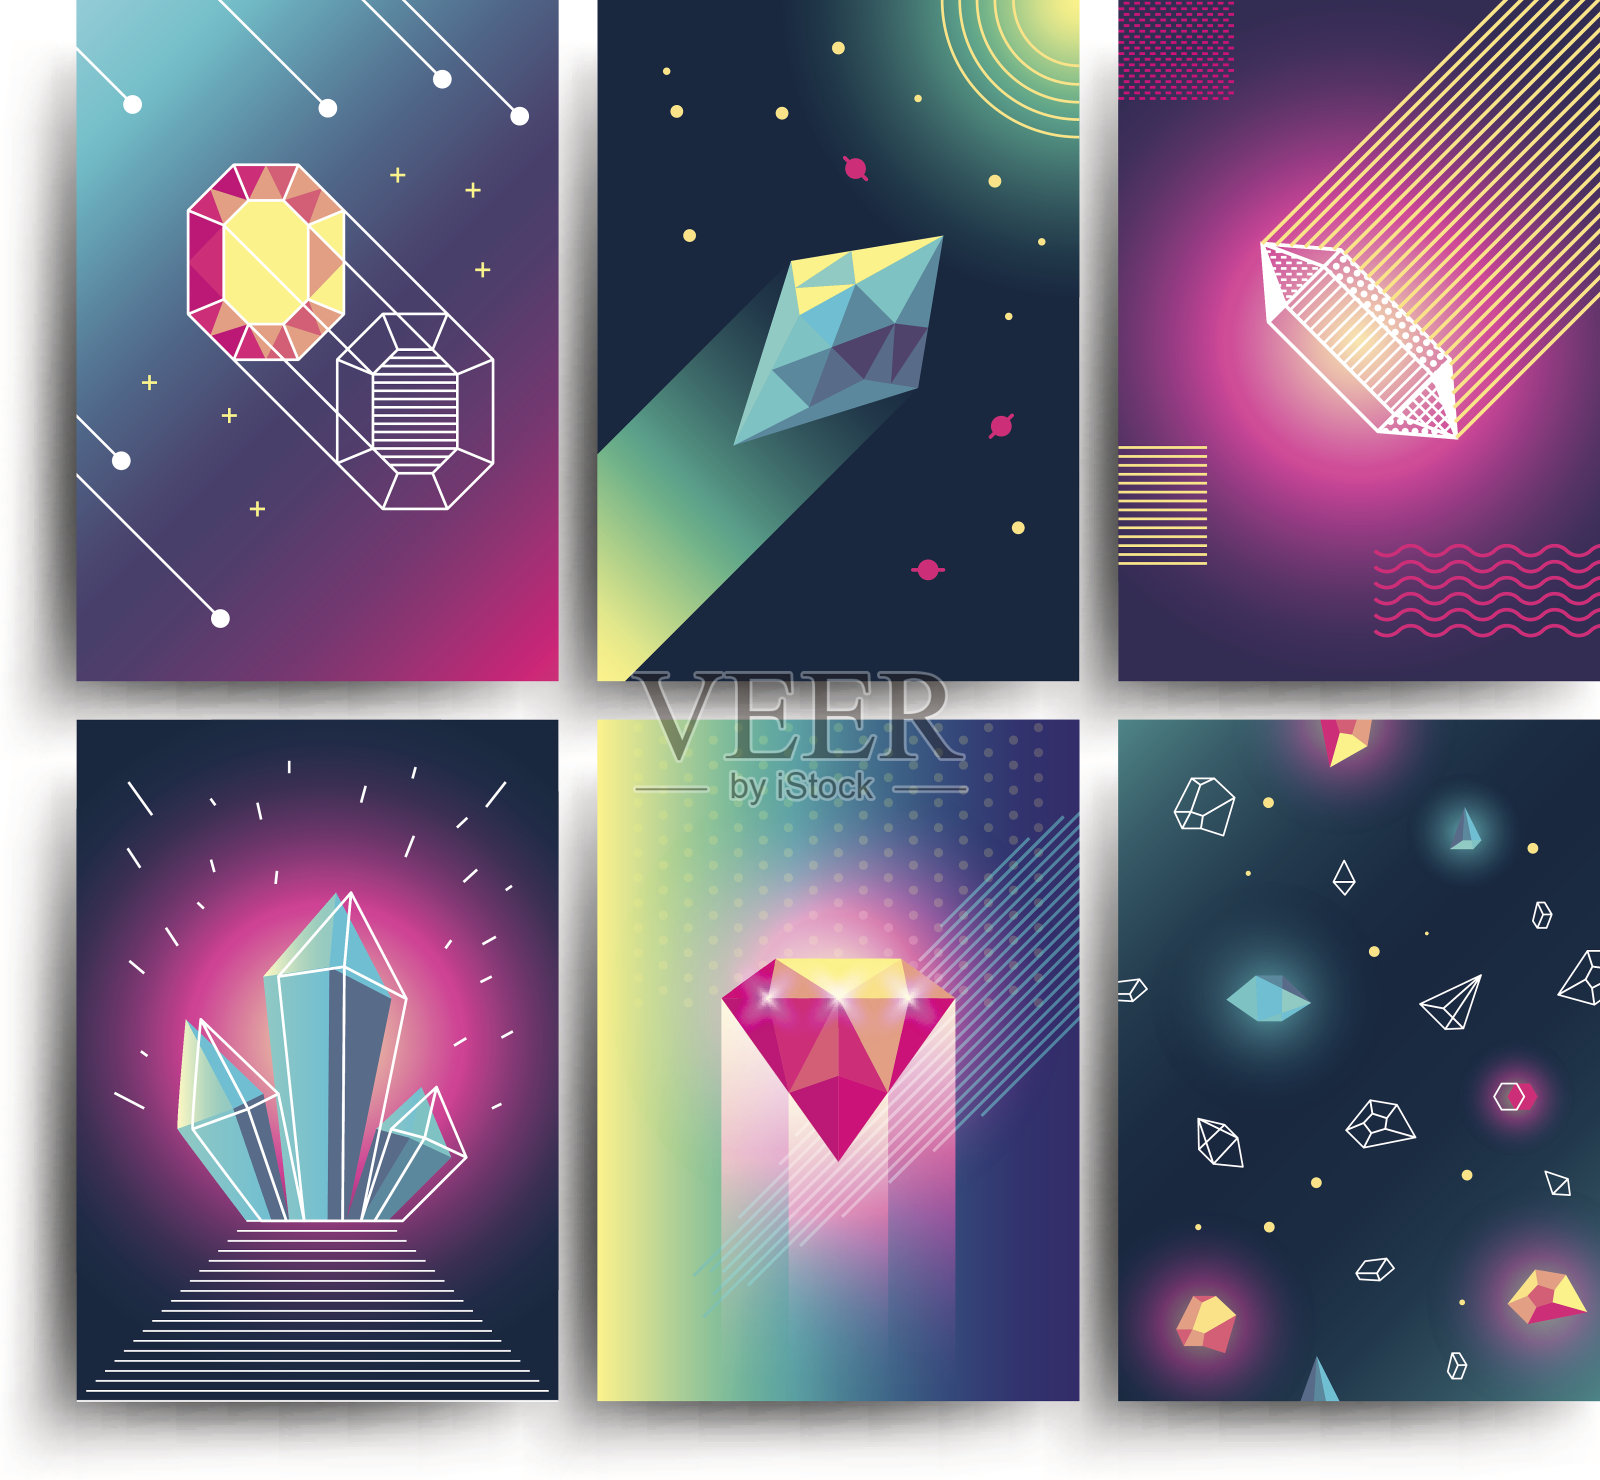 抽象时尚的矢量宇宙海报与水晶宝石和金字塔几何形状。80年代风格的霓虹星系背景插画图片素材